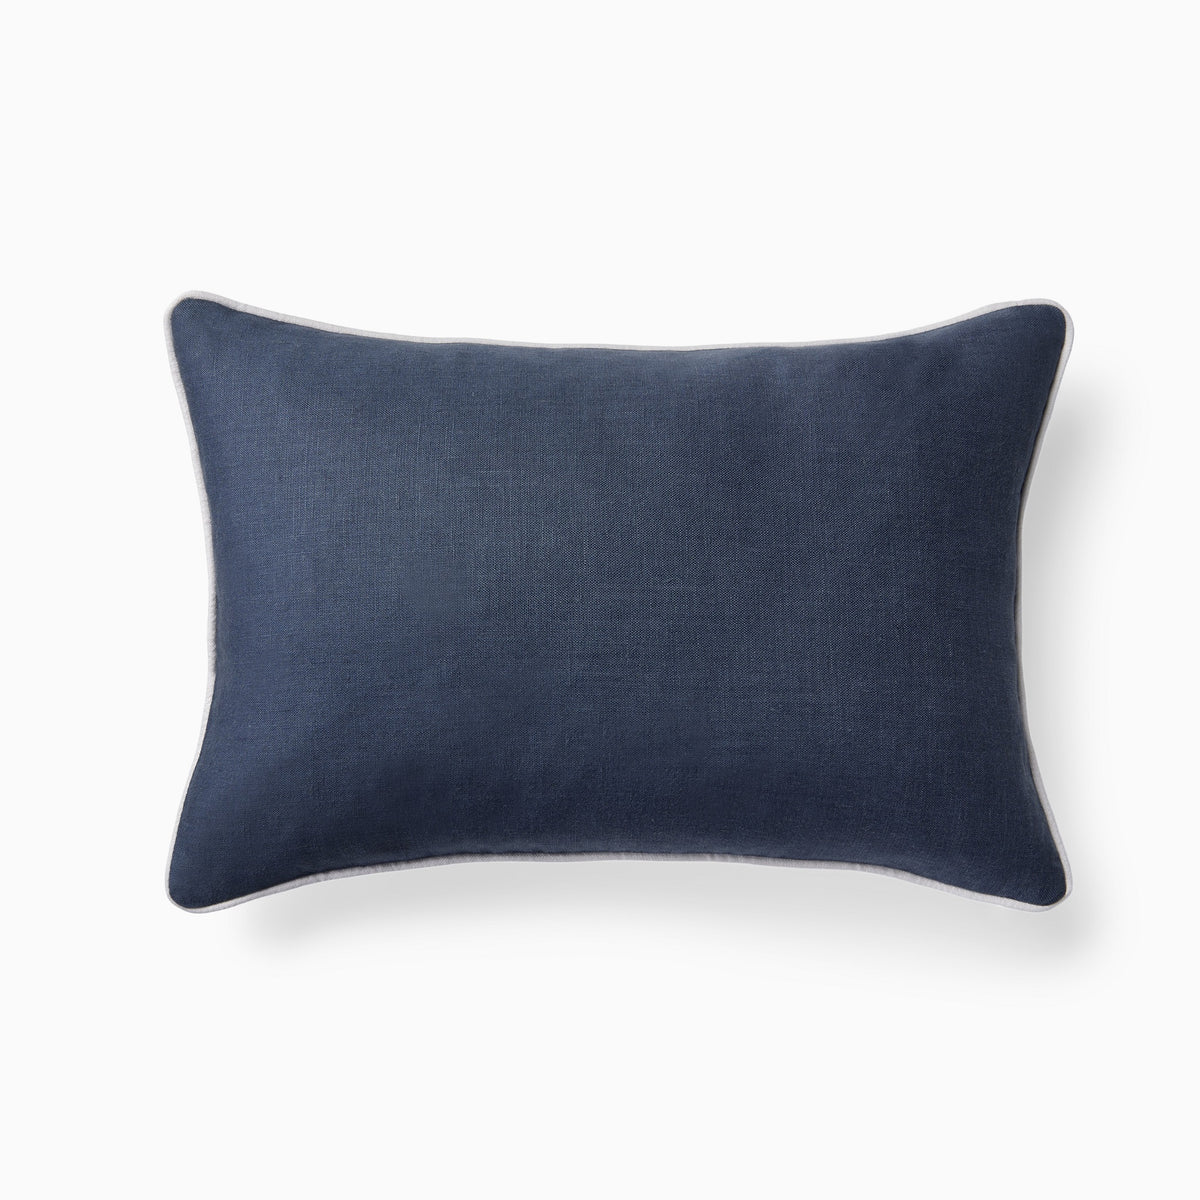 Clear Image of Sferra Manarola Decorative Pillow in Indigo/Platinum Front